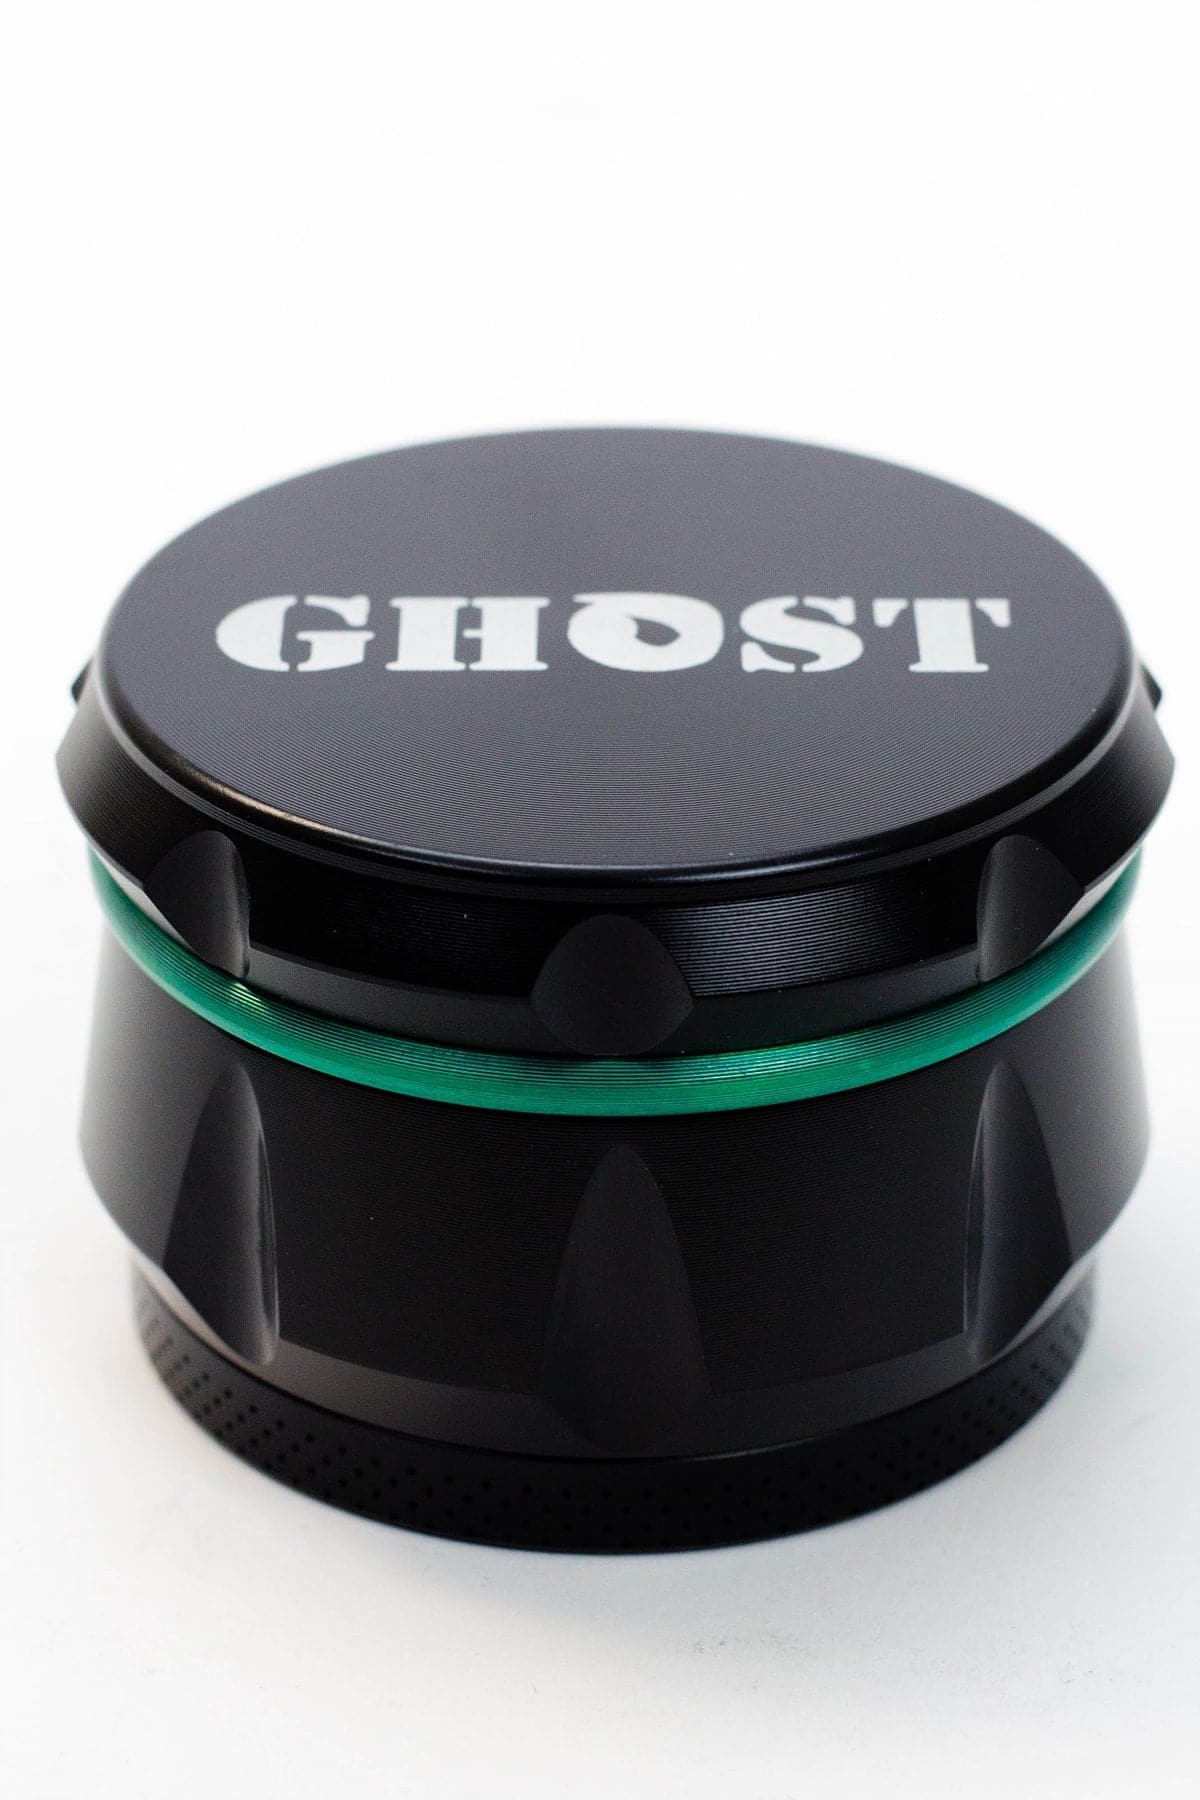 Ghost 4 parts black herb grinder_8